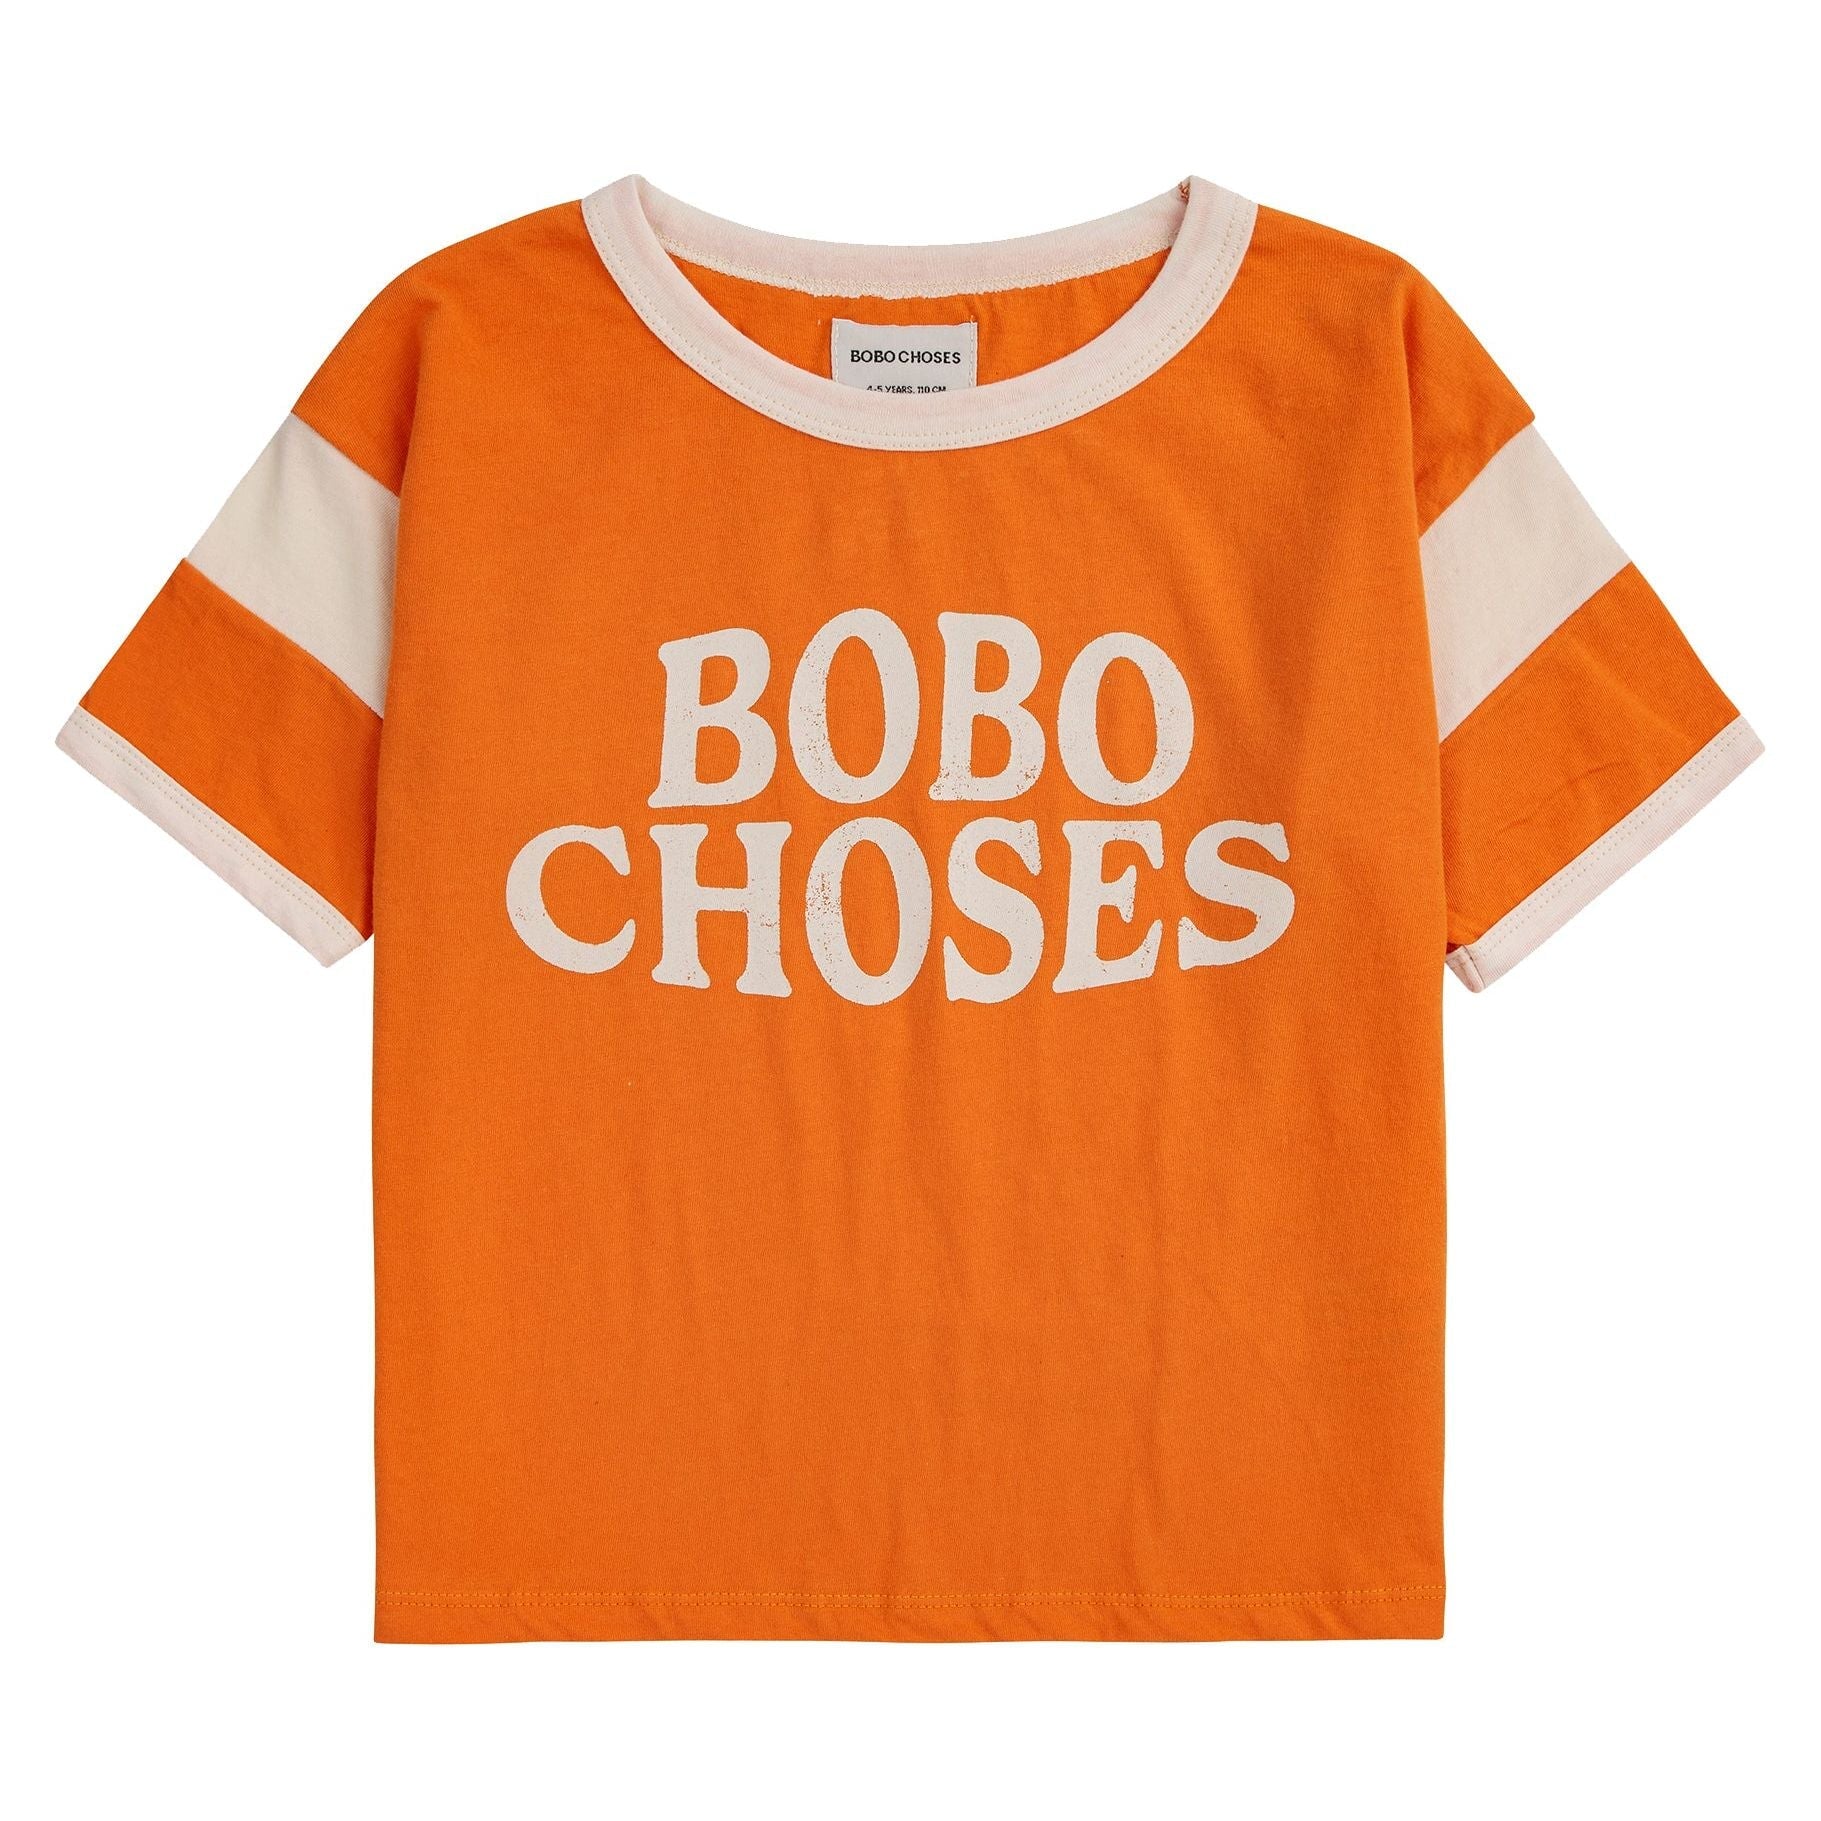 Bobo Choses T-Shirt - Buckets and Spades